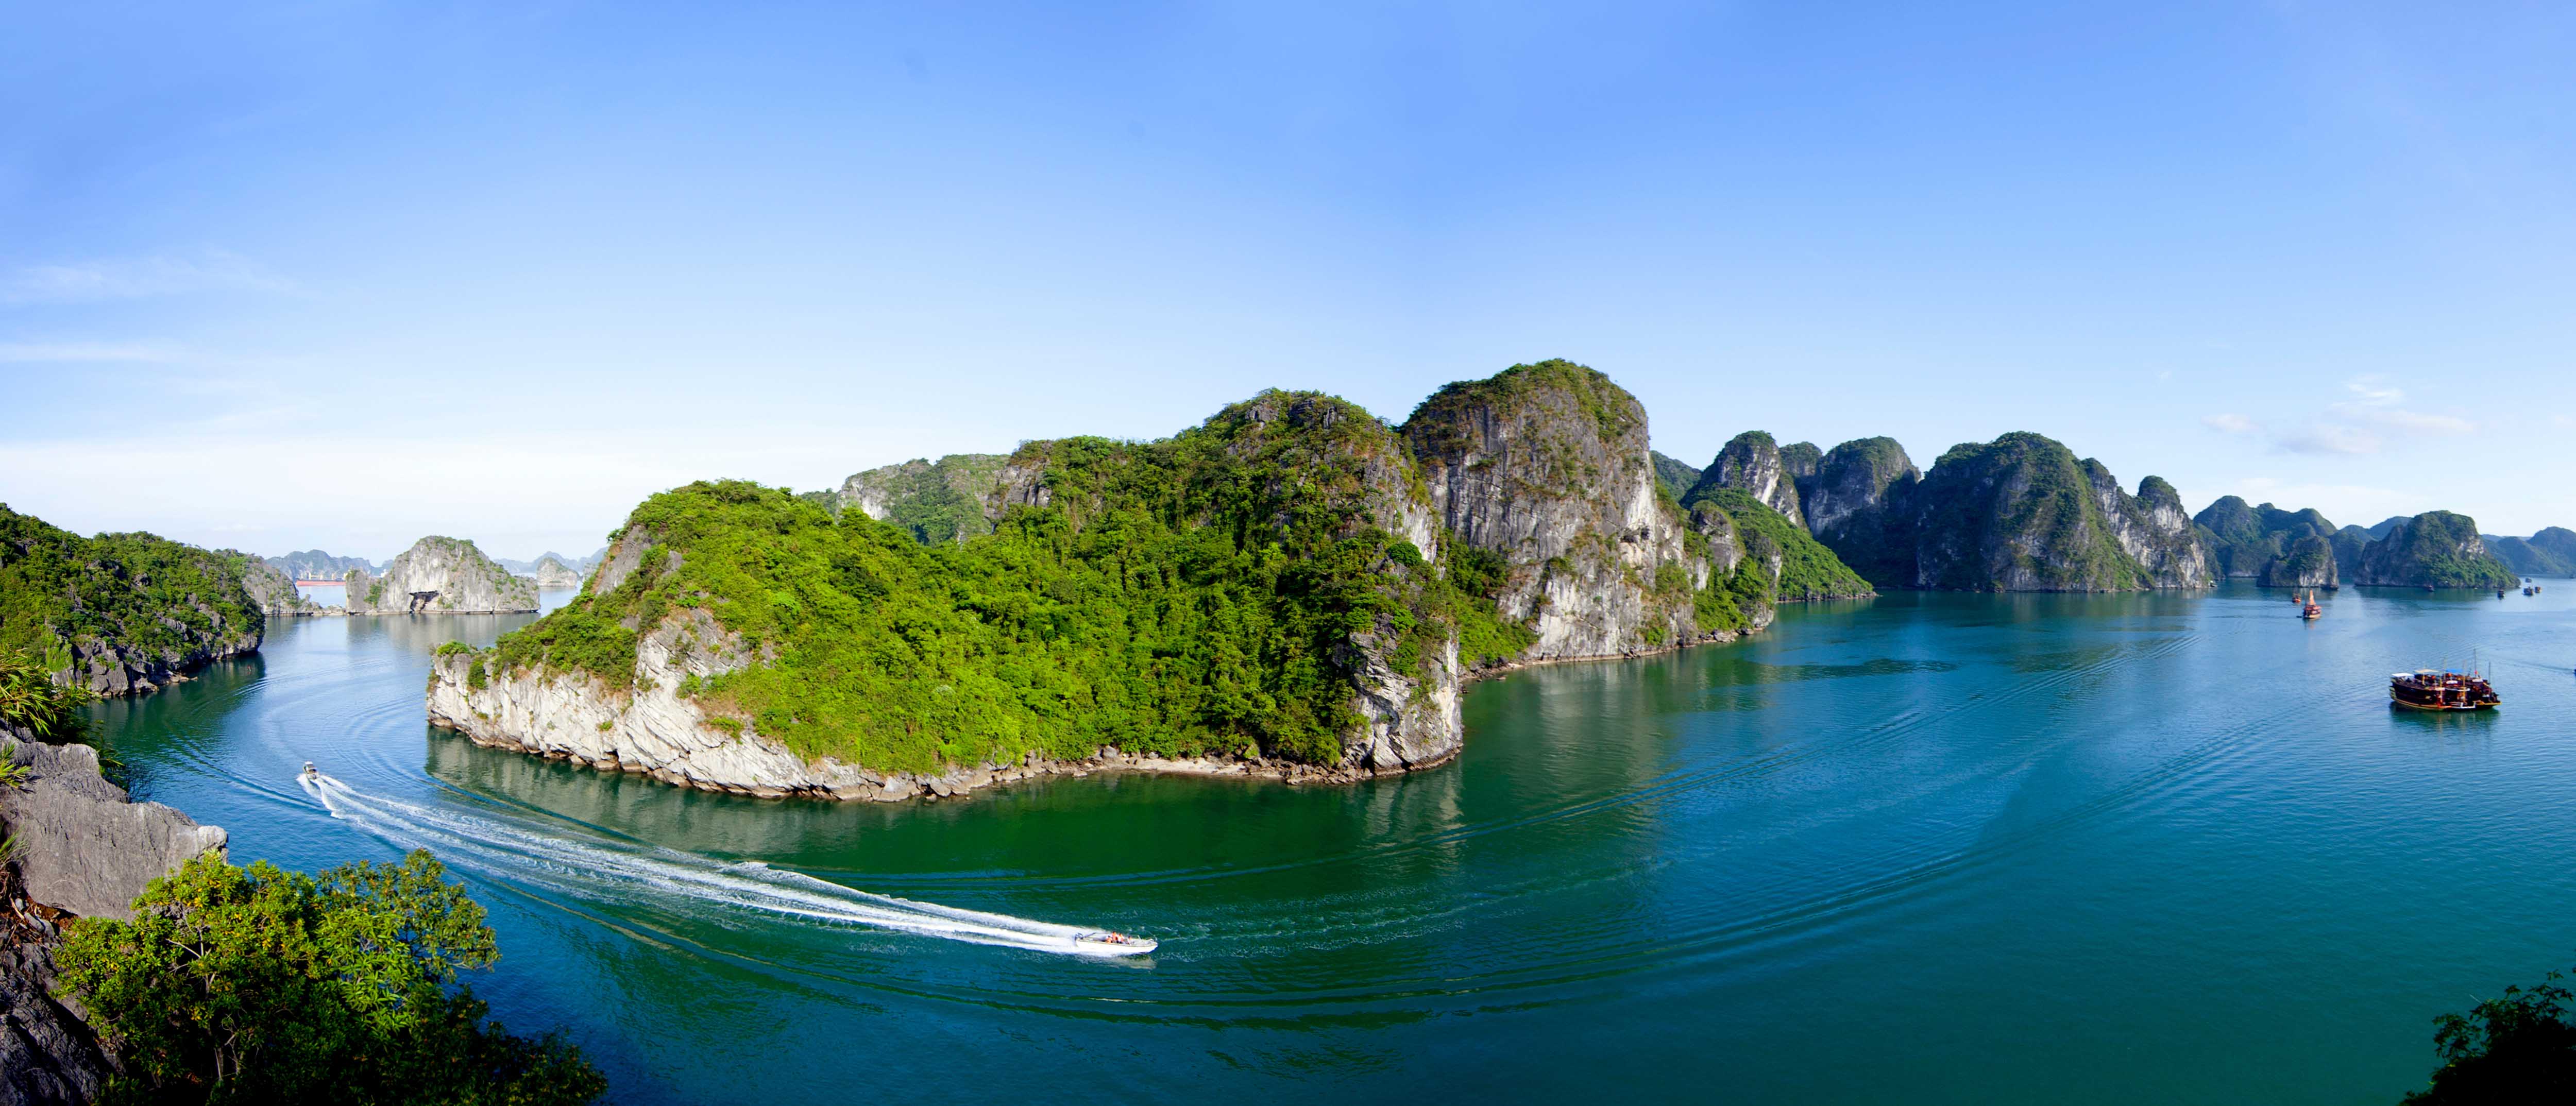 Panoramic view of Ha Long Bay